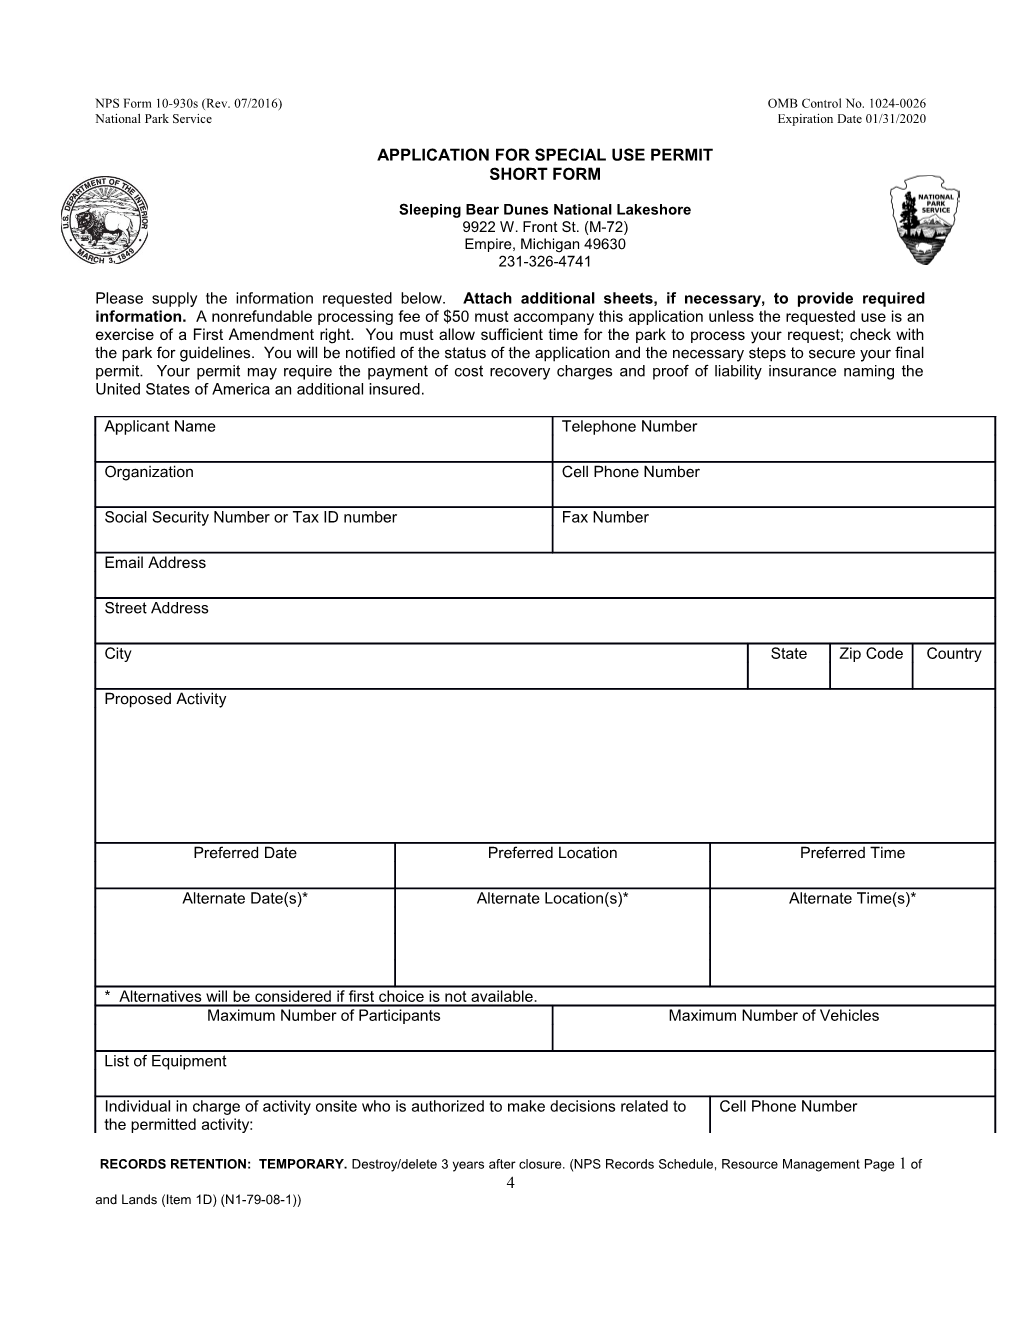 NPS Form 10-930S (Rev. 07/2016)OMB Control No. 1024-0026